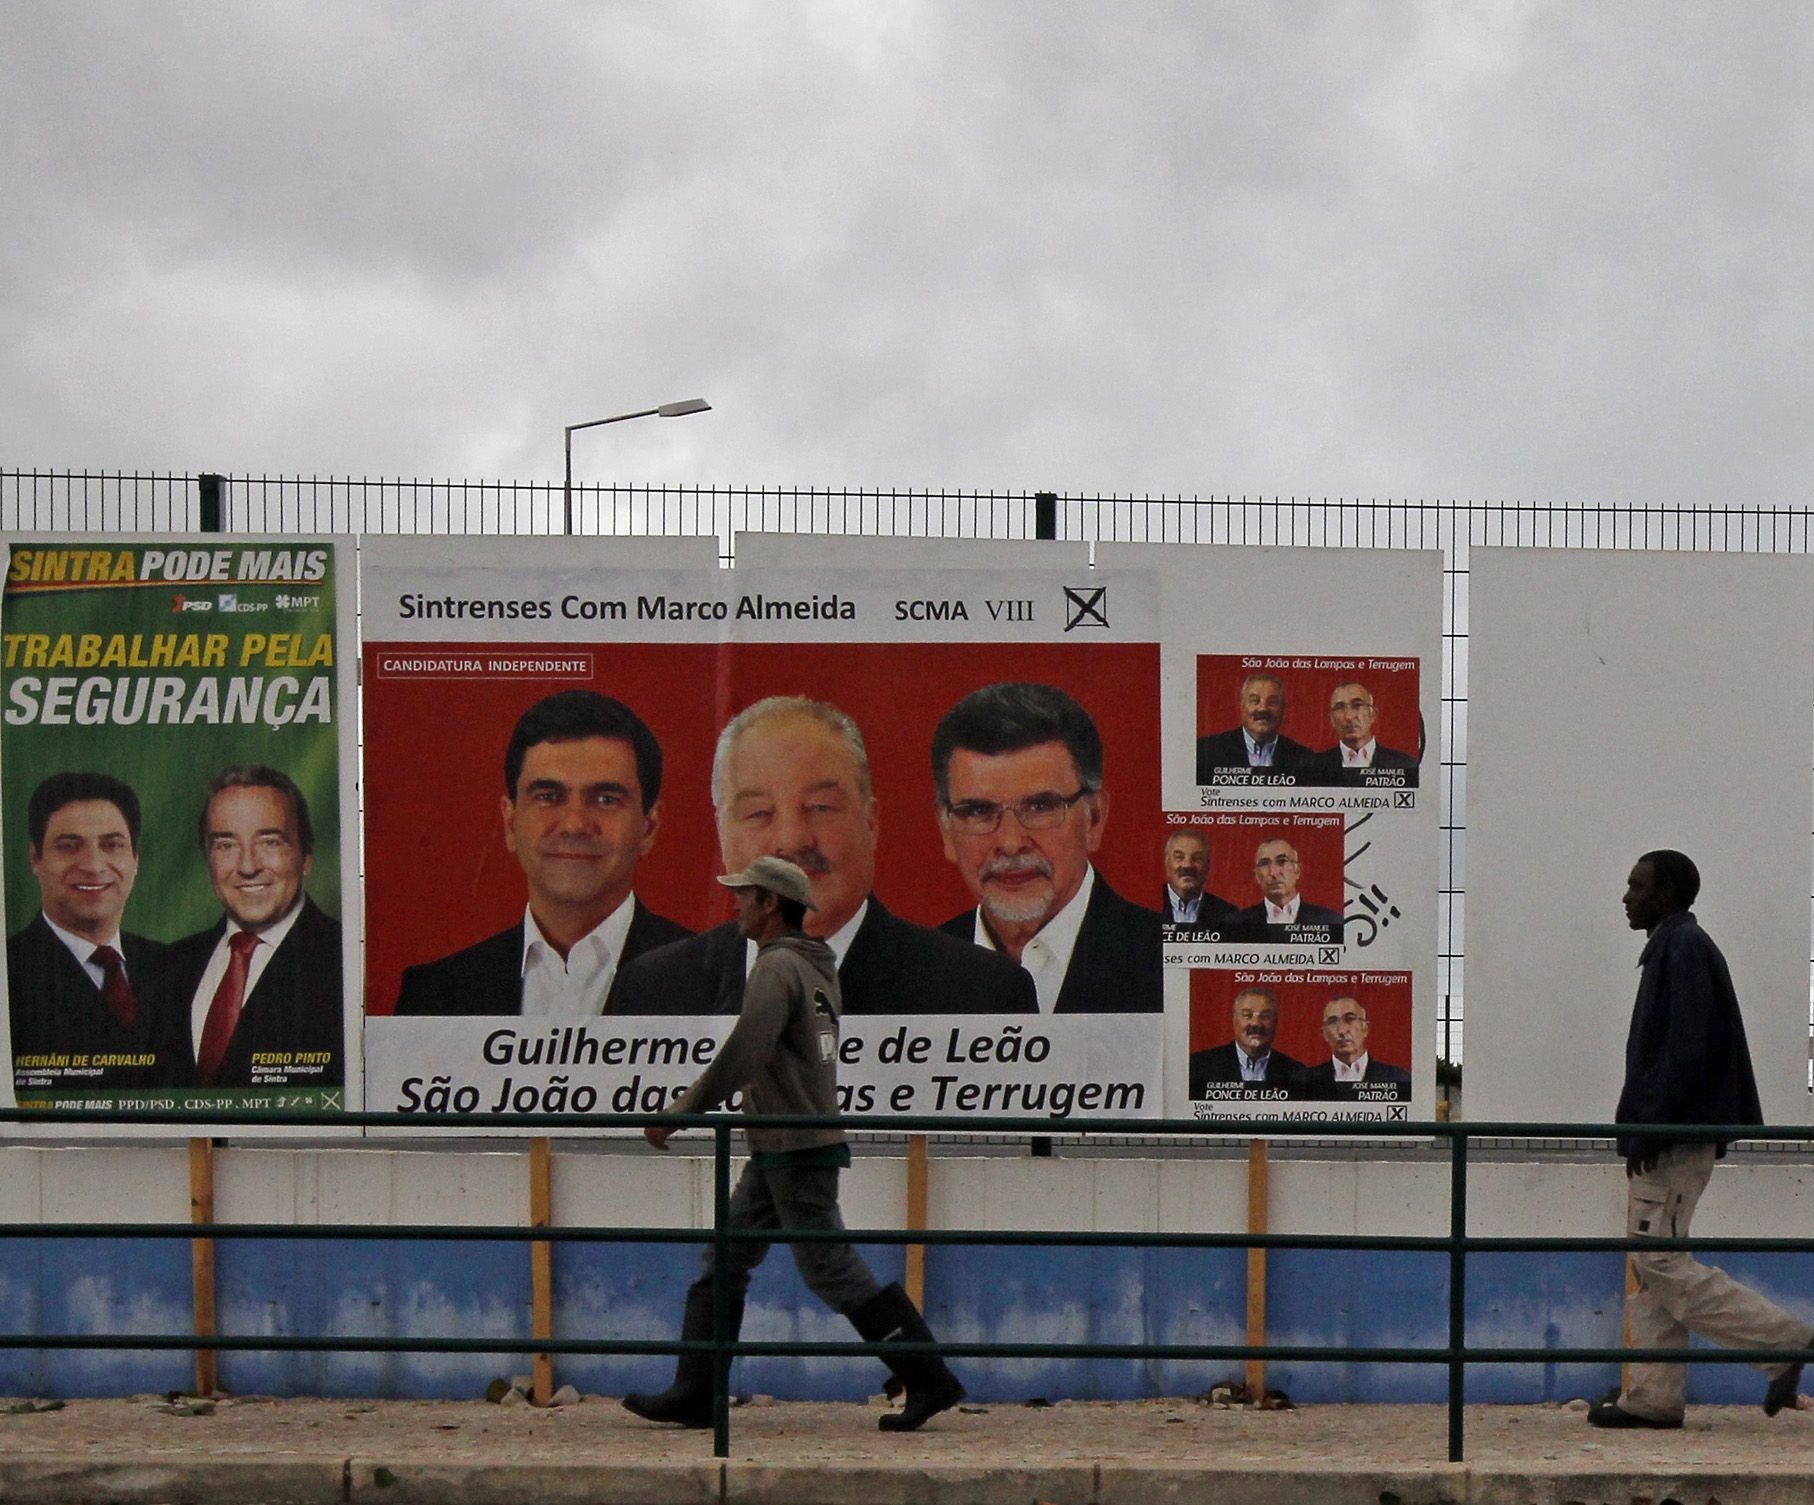 Δημοτικές εκλογές στην Πορτογαλία